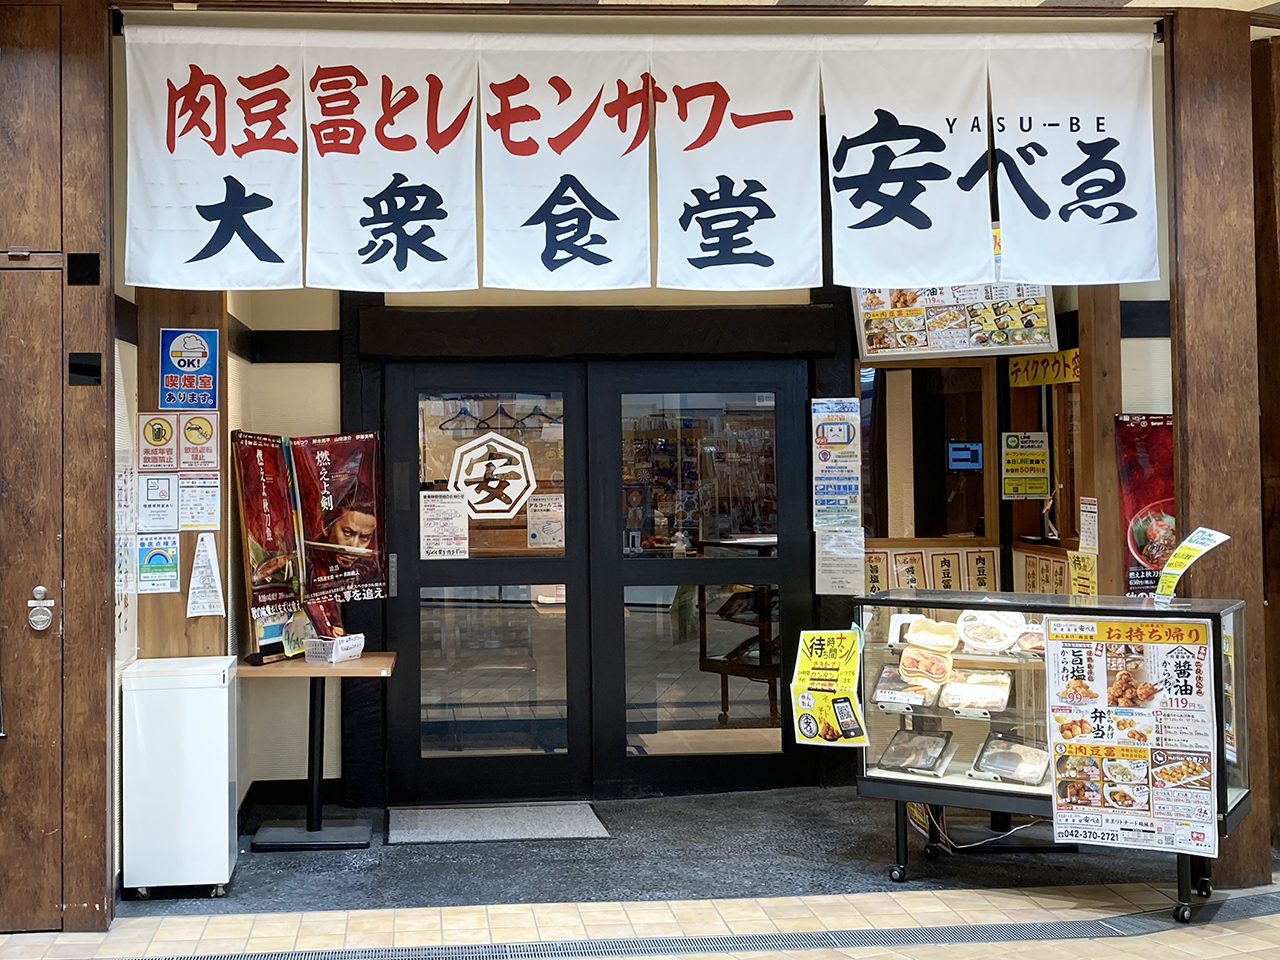 秋の味覚サンマを求めて♪大衆食堂安べゑの「秋刀魚の塩焼き定食」が稲城駅周辺で好評の模様♪